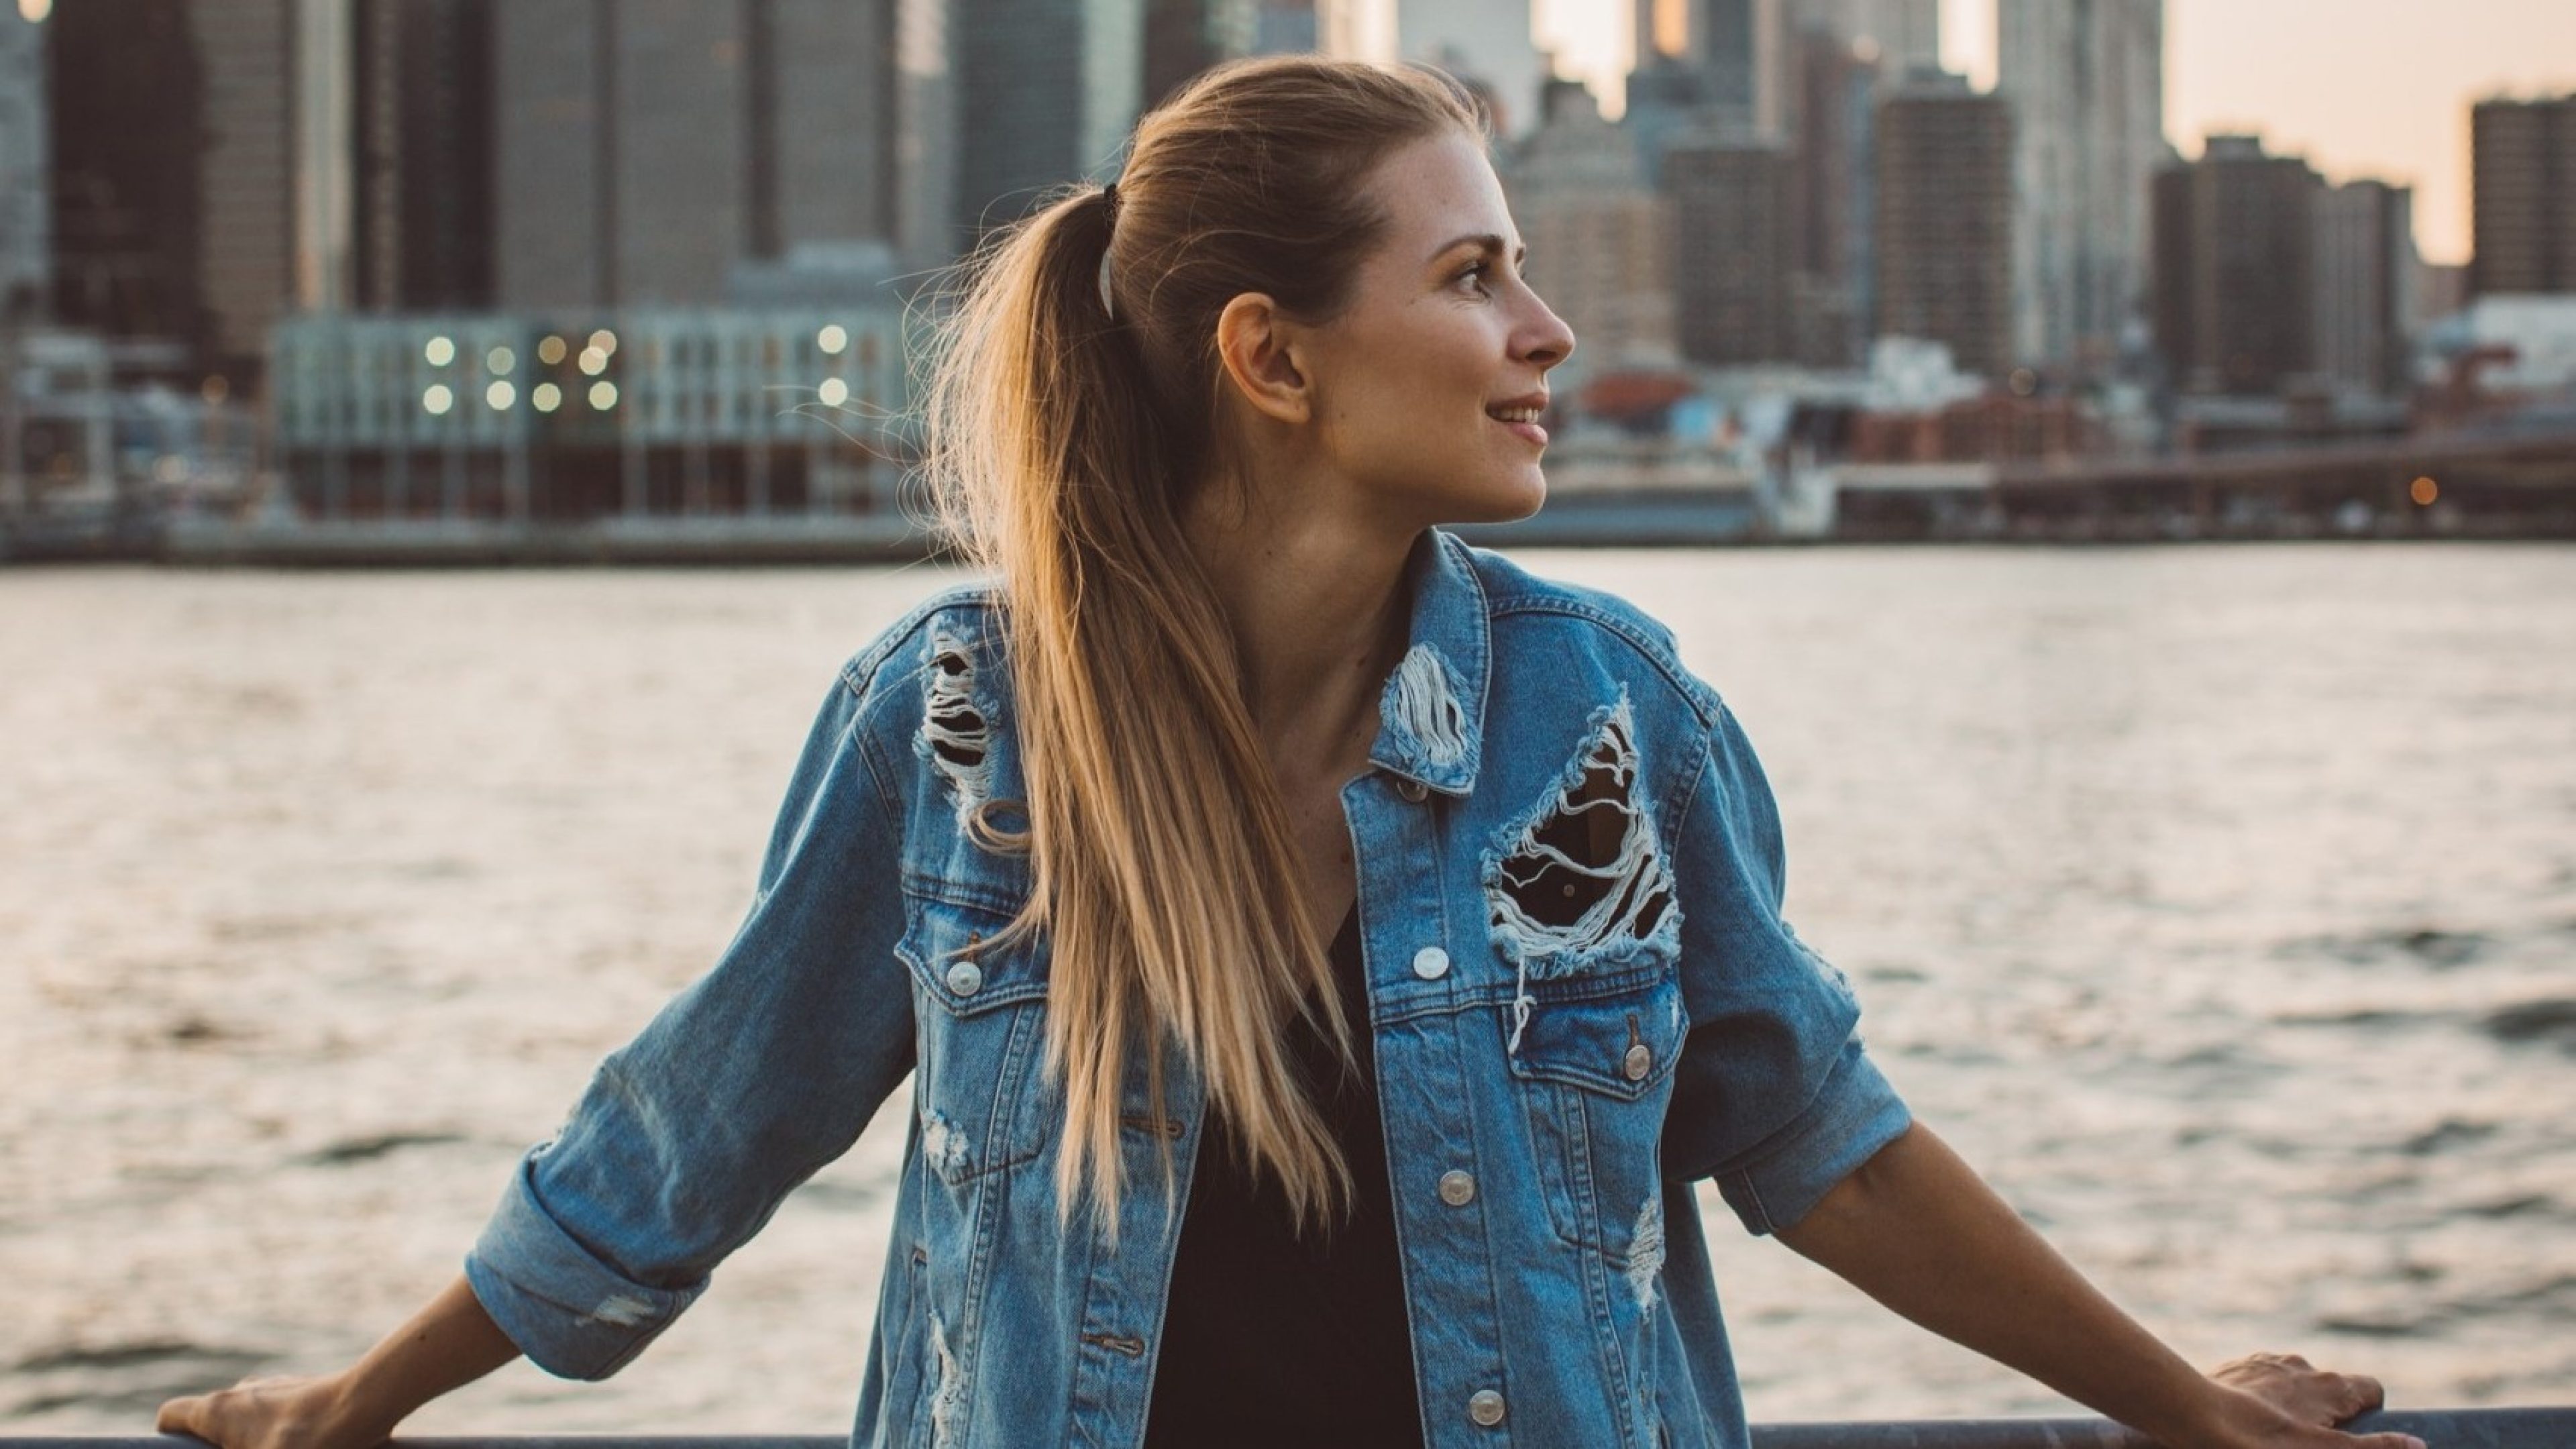 Una giovane donna dai lunghi capelli biondi e una giacca di jeans strappata si trova davanti a una ringhiera vicino all’acqua, con un paesaggio urbano sullo sfondo. Guarda di lato sorridendo, mentre il sole tramonta.